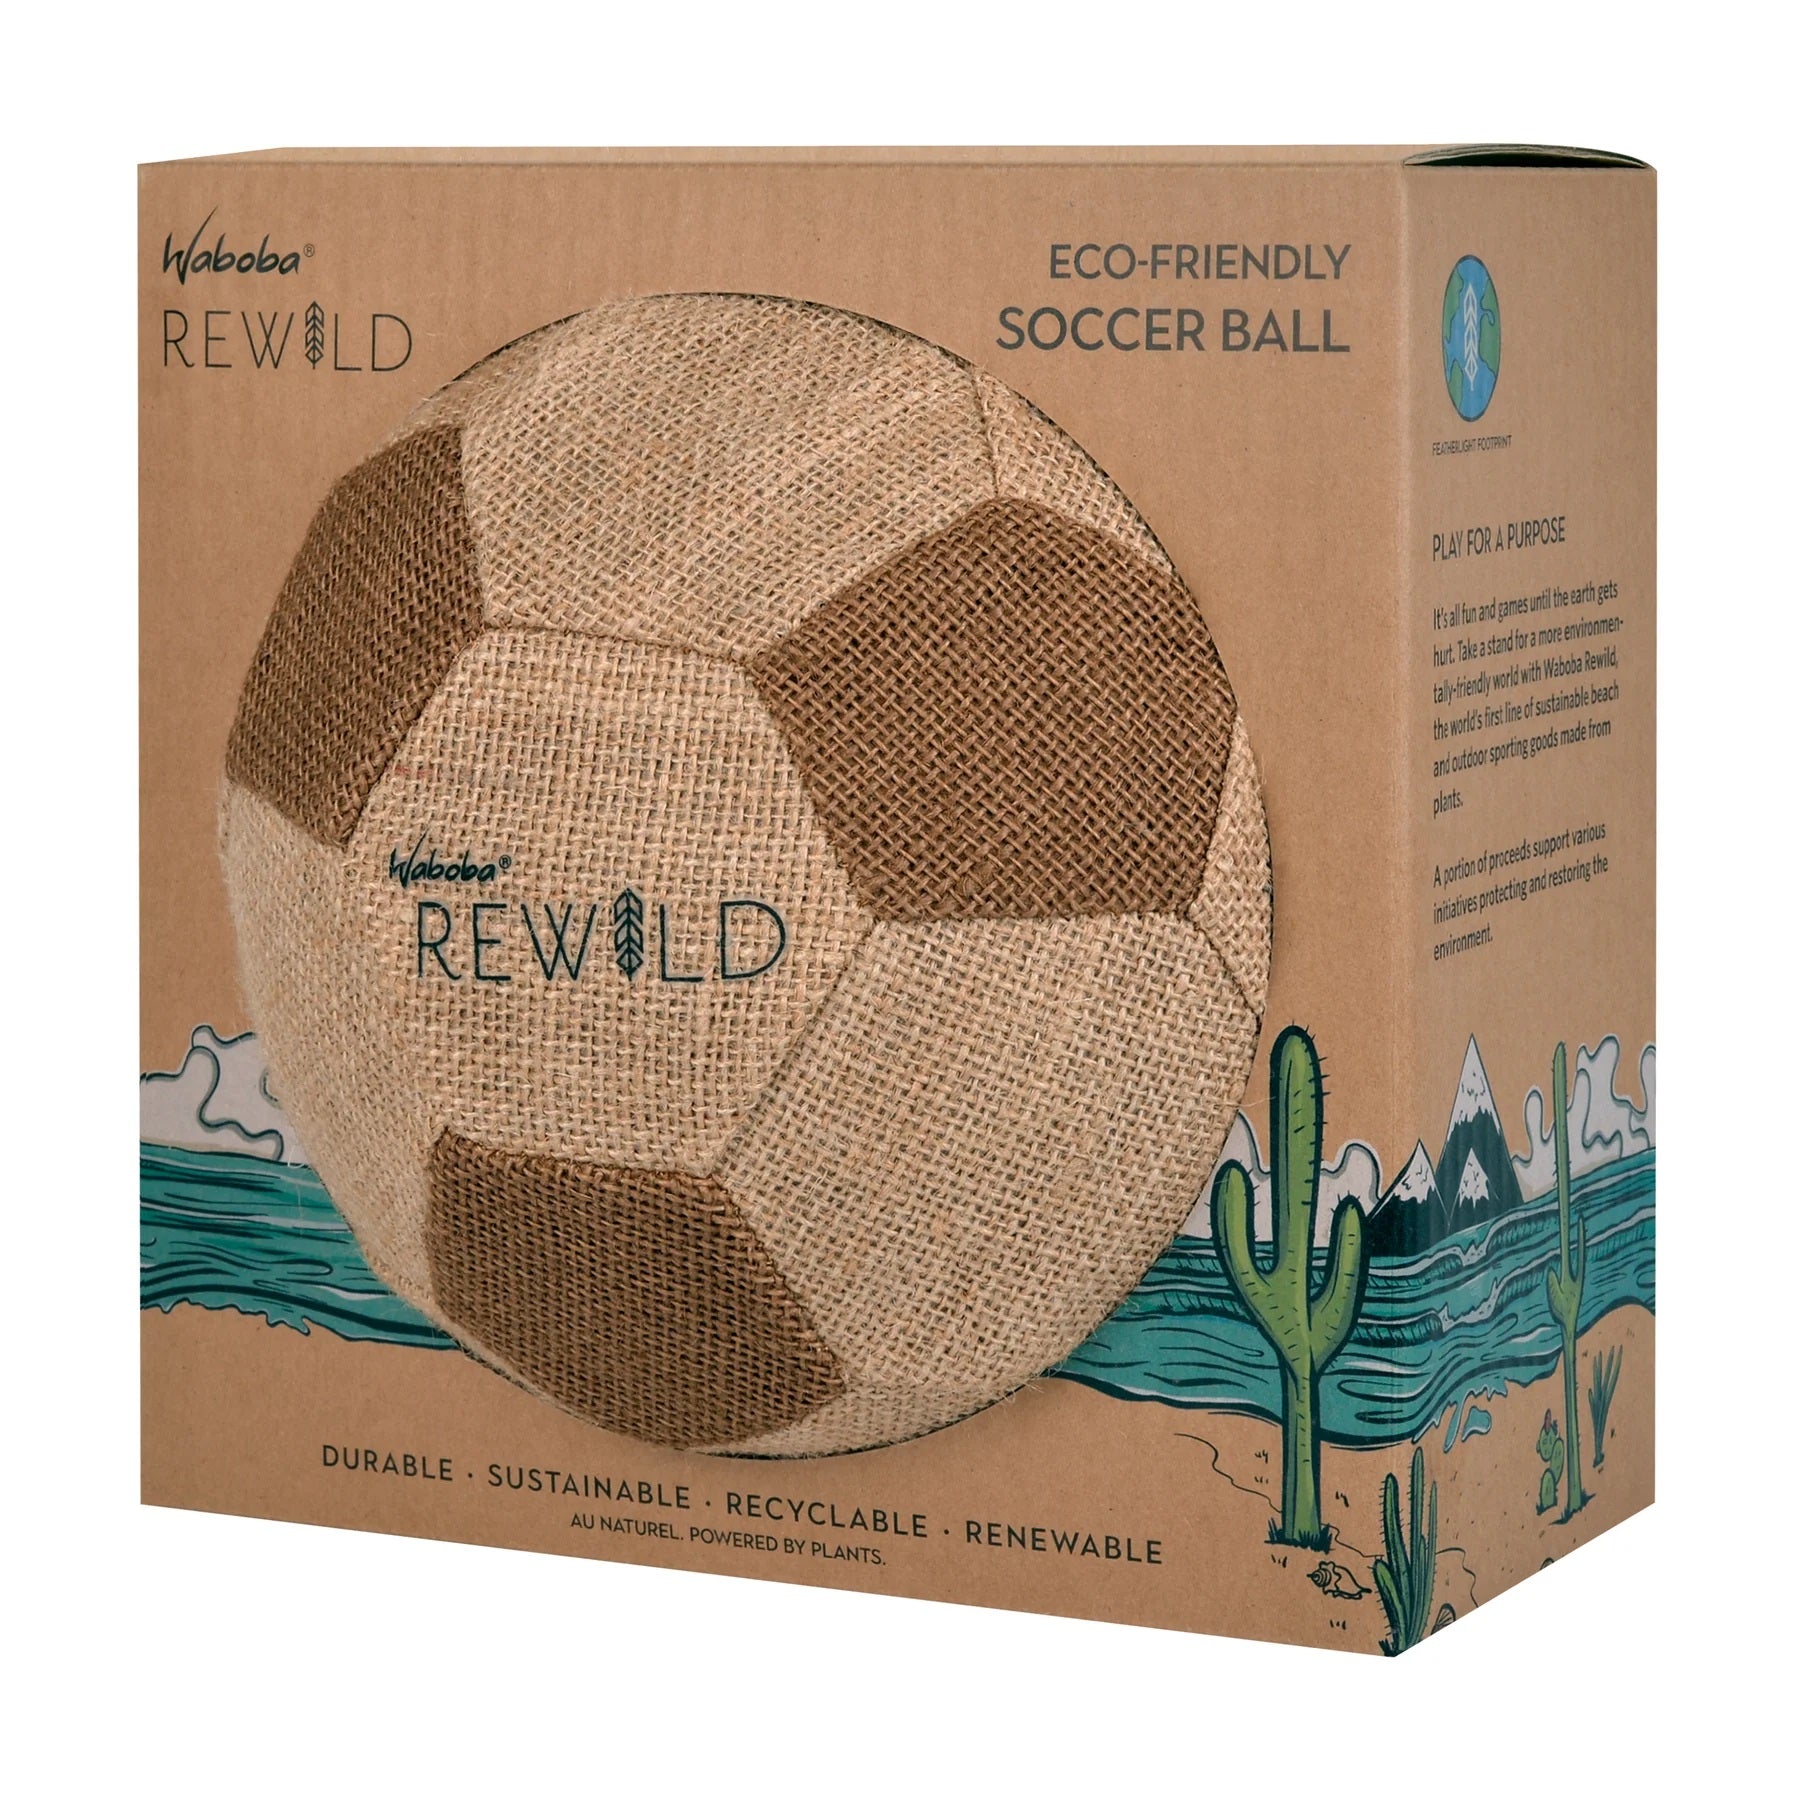 Rewild Soccer Ball